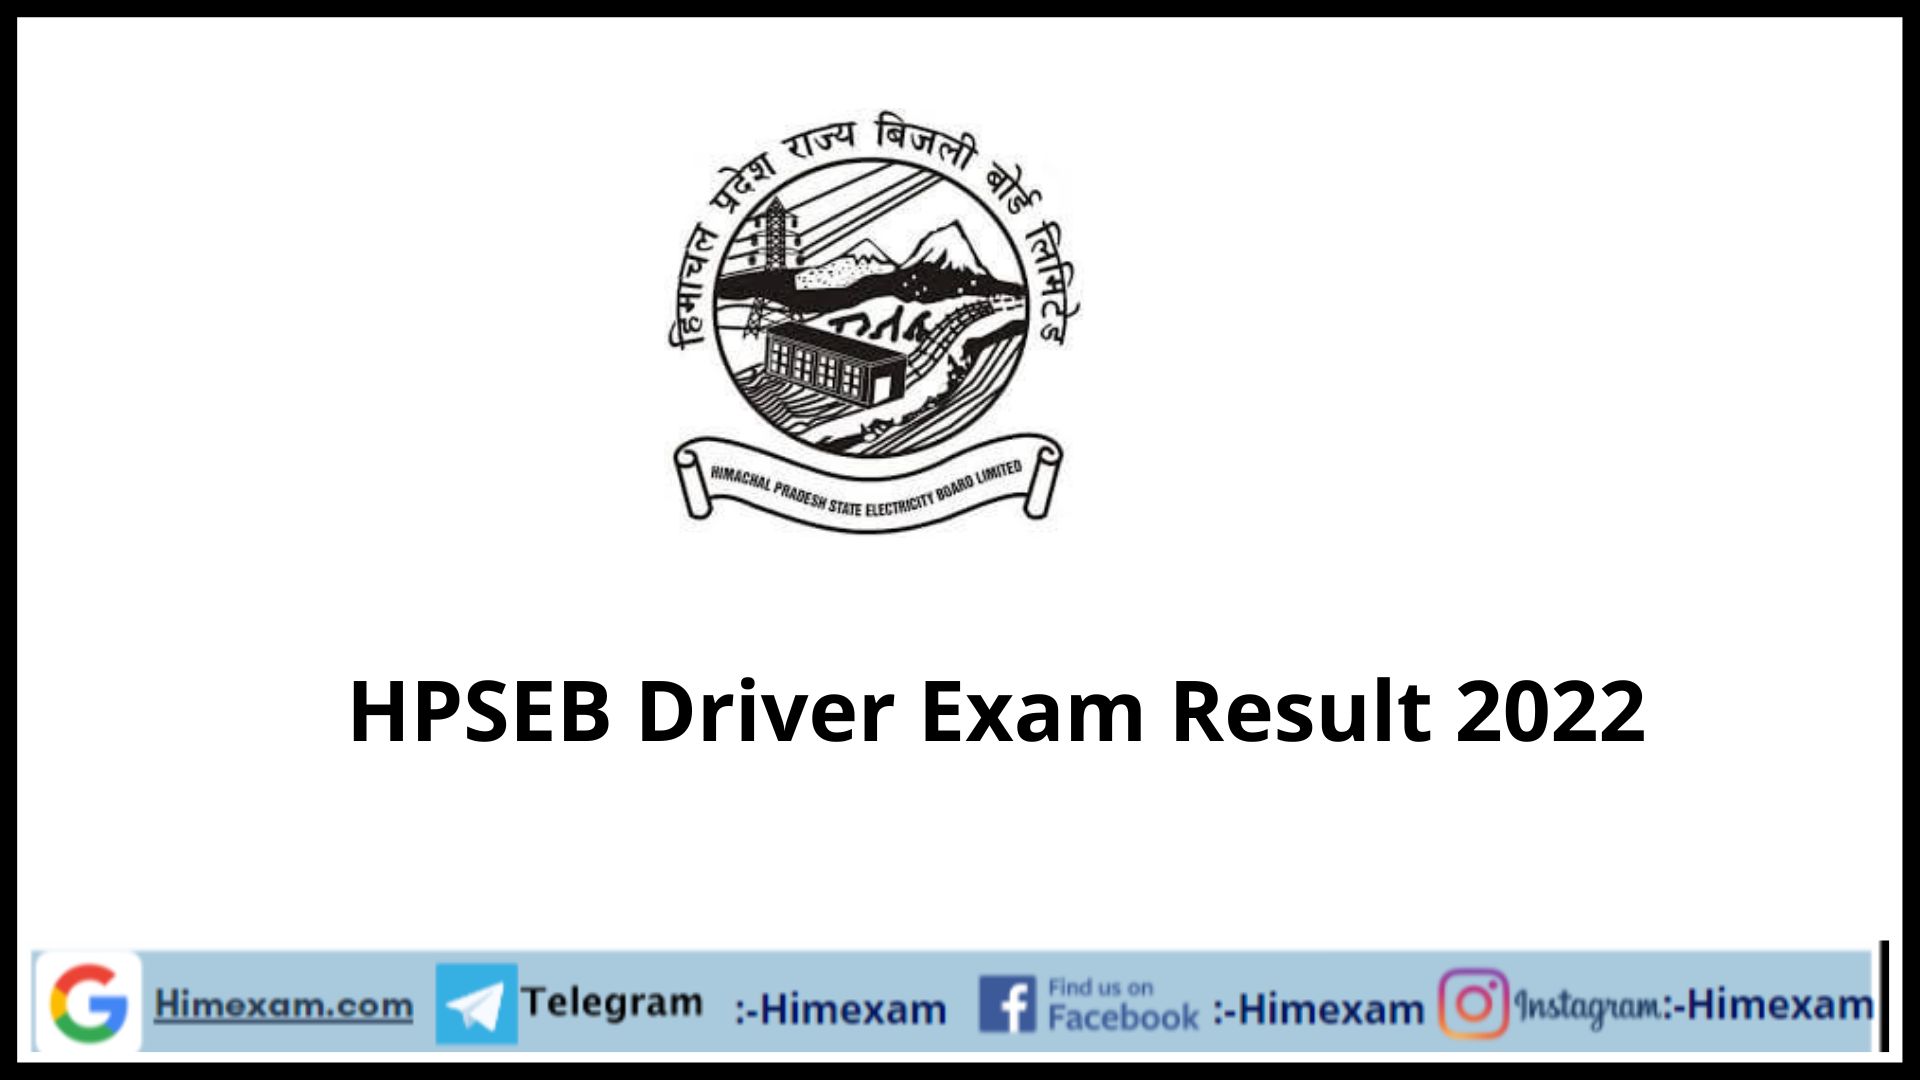 HPSEB Driver Exam Result 2022